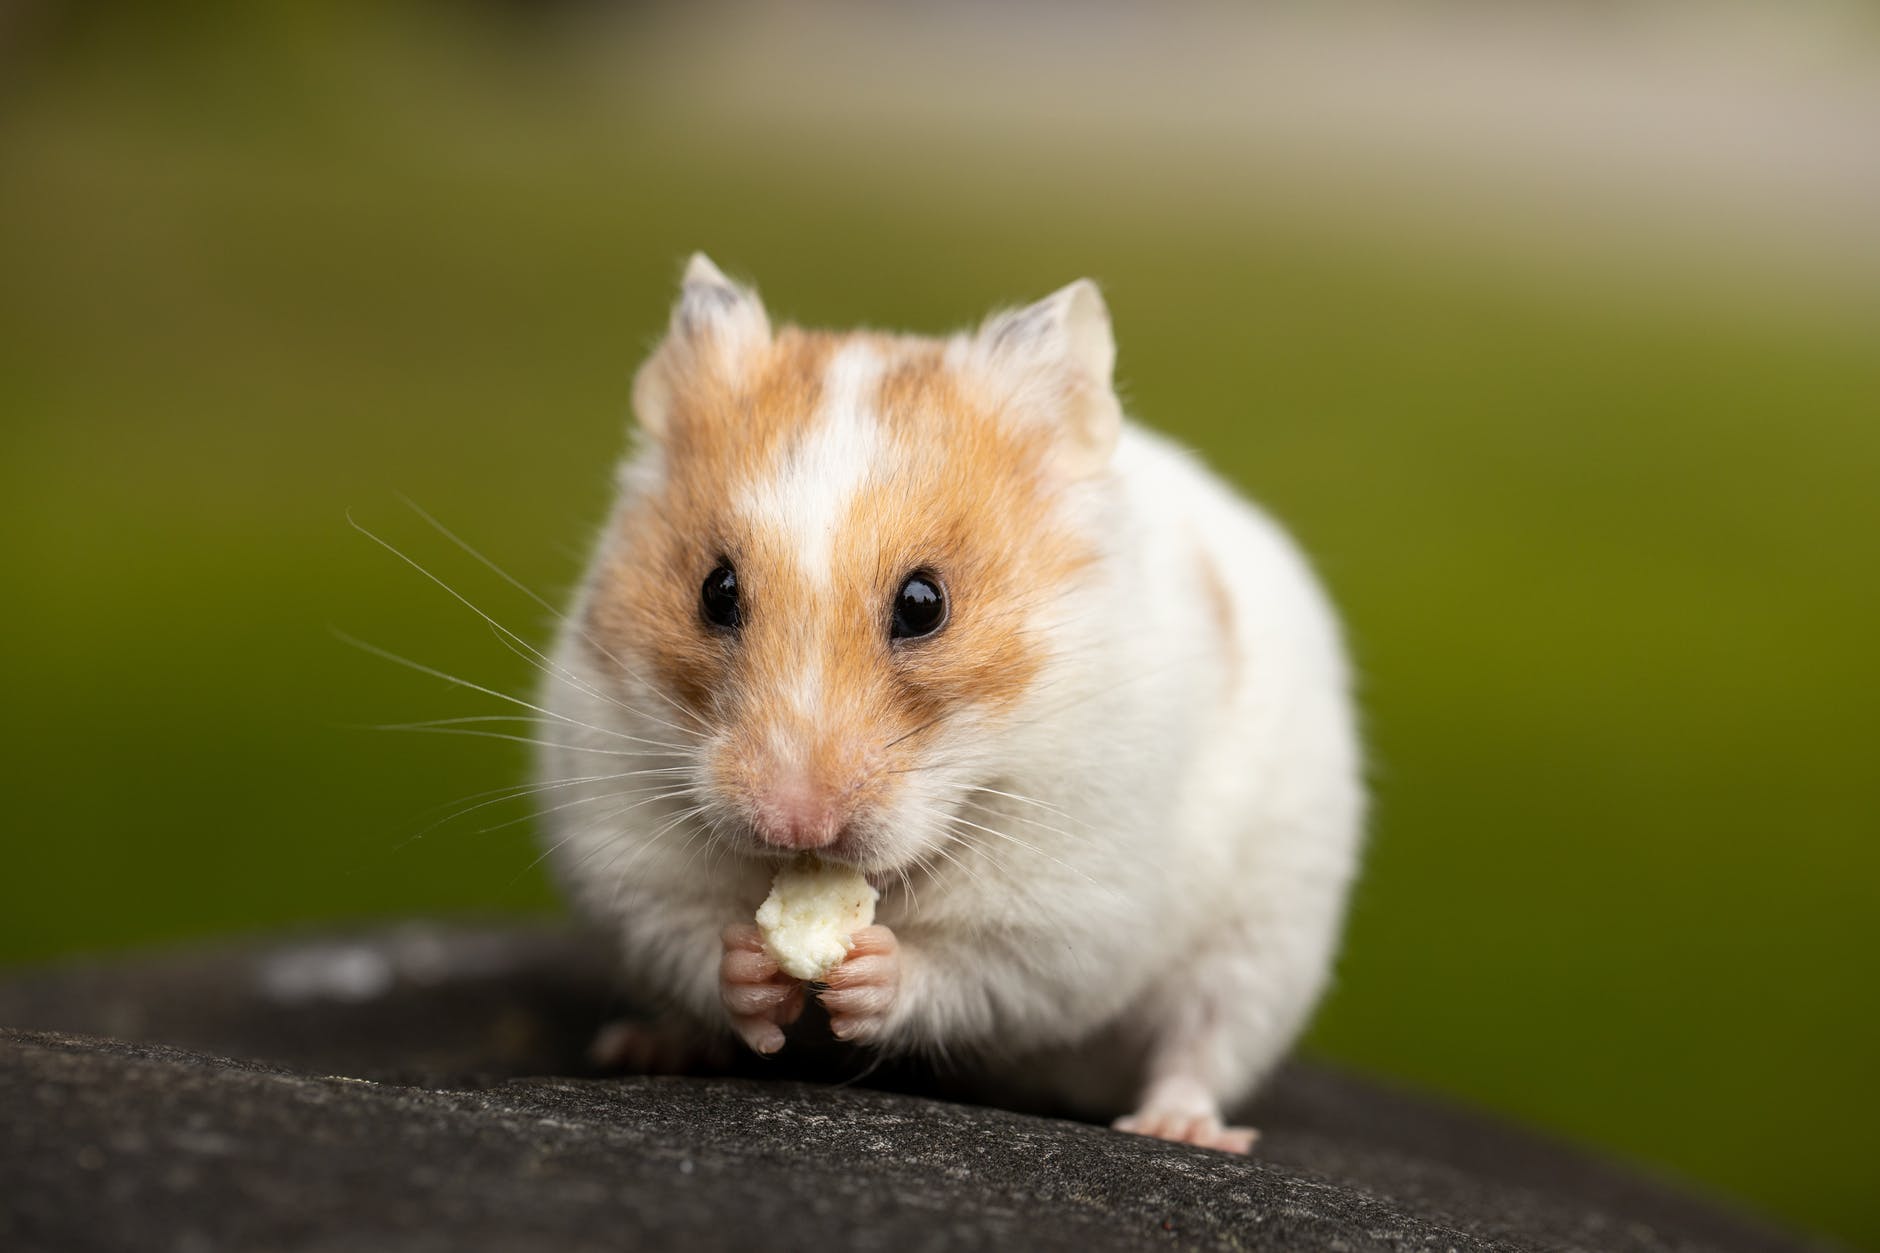 Criando hamster: saiba agora todos os custos de se ter esse roedor de pequeno porte tão querido em sua casa.